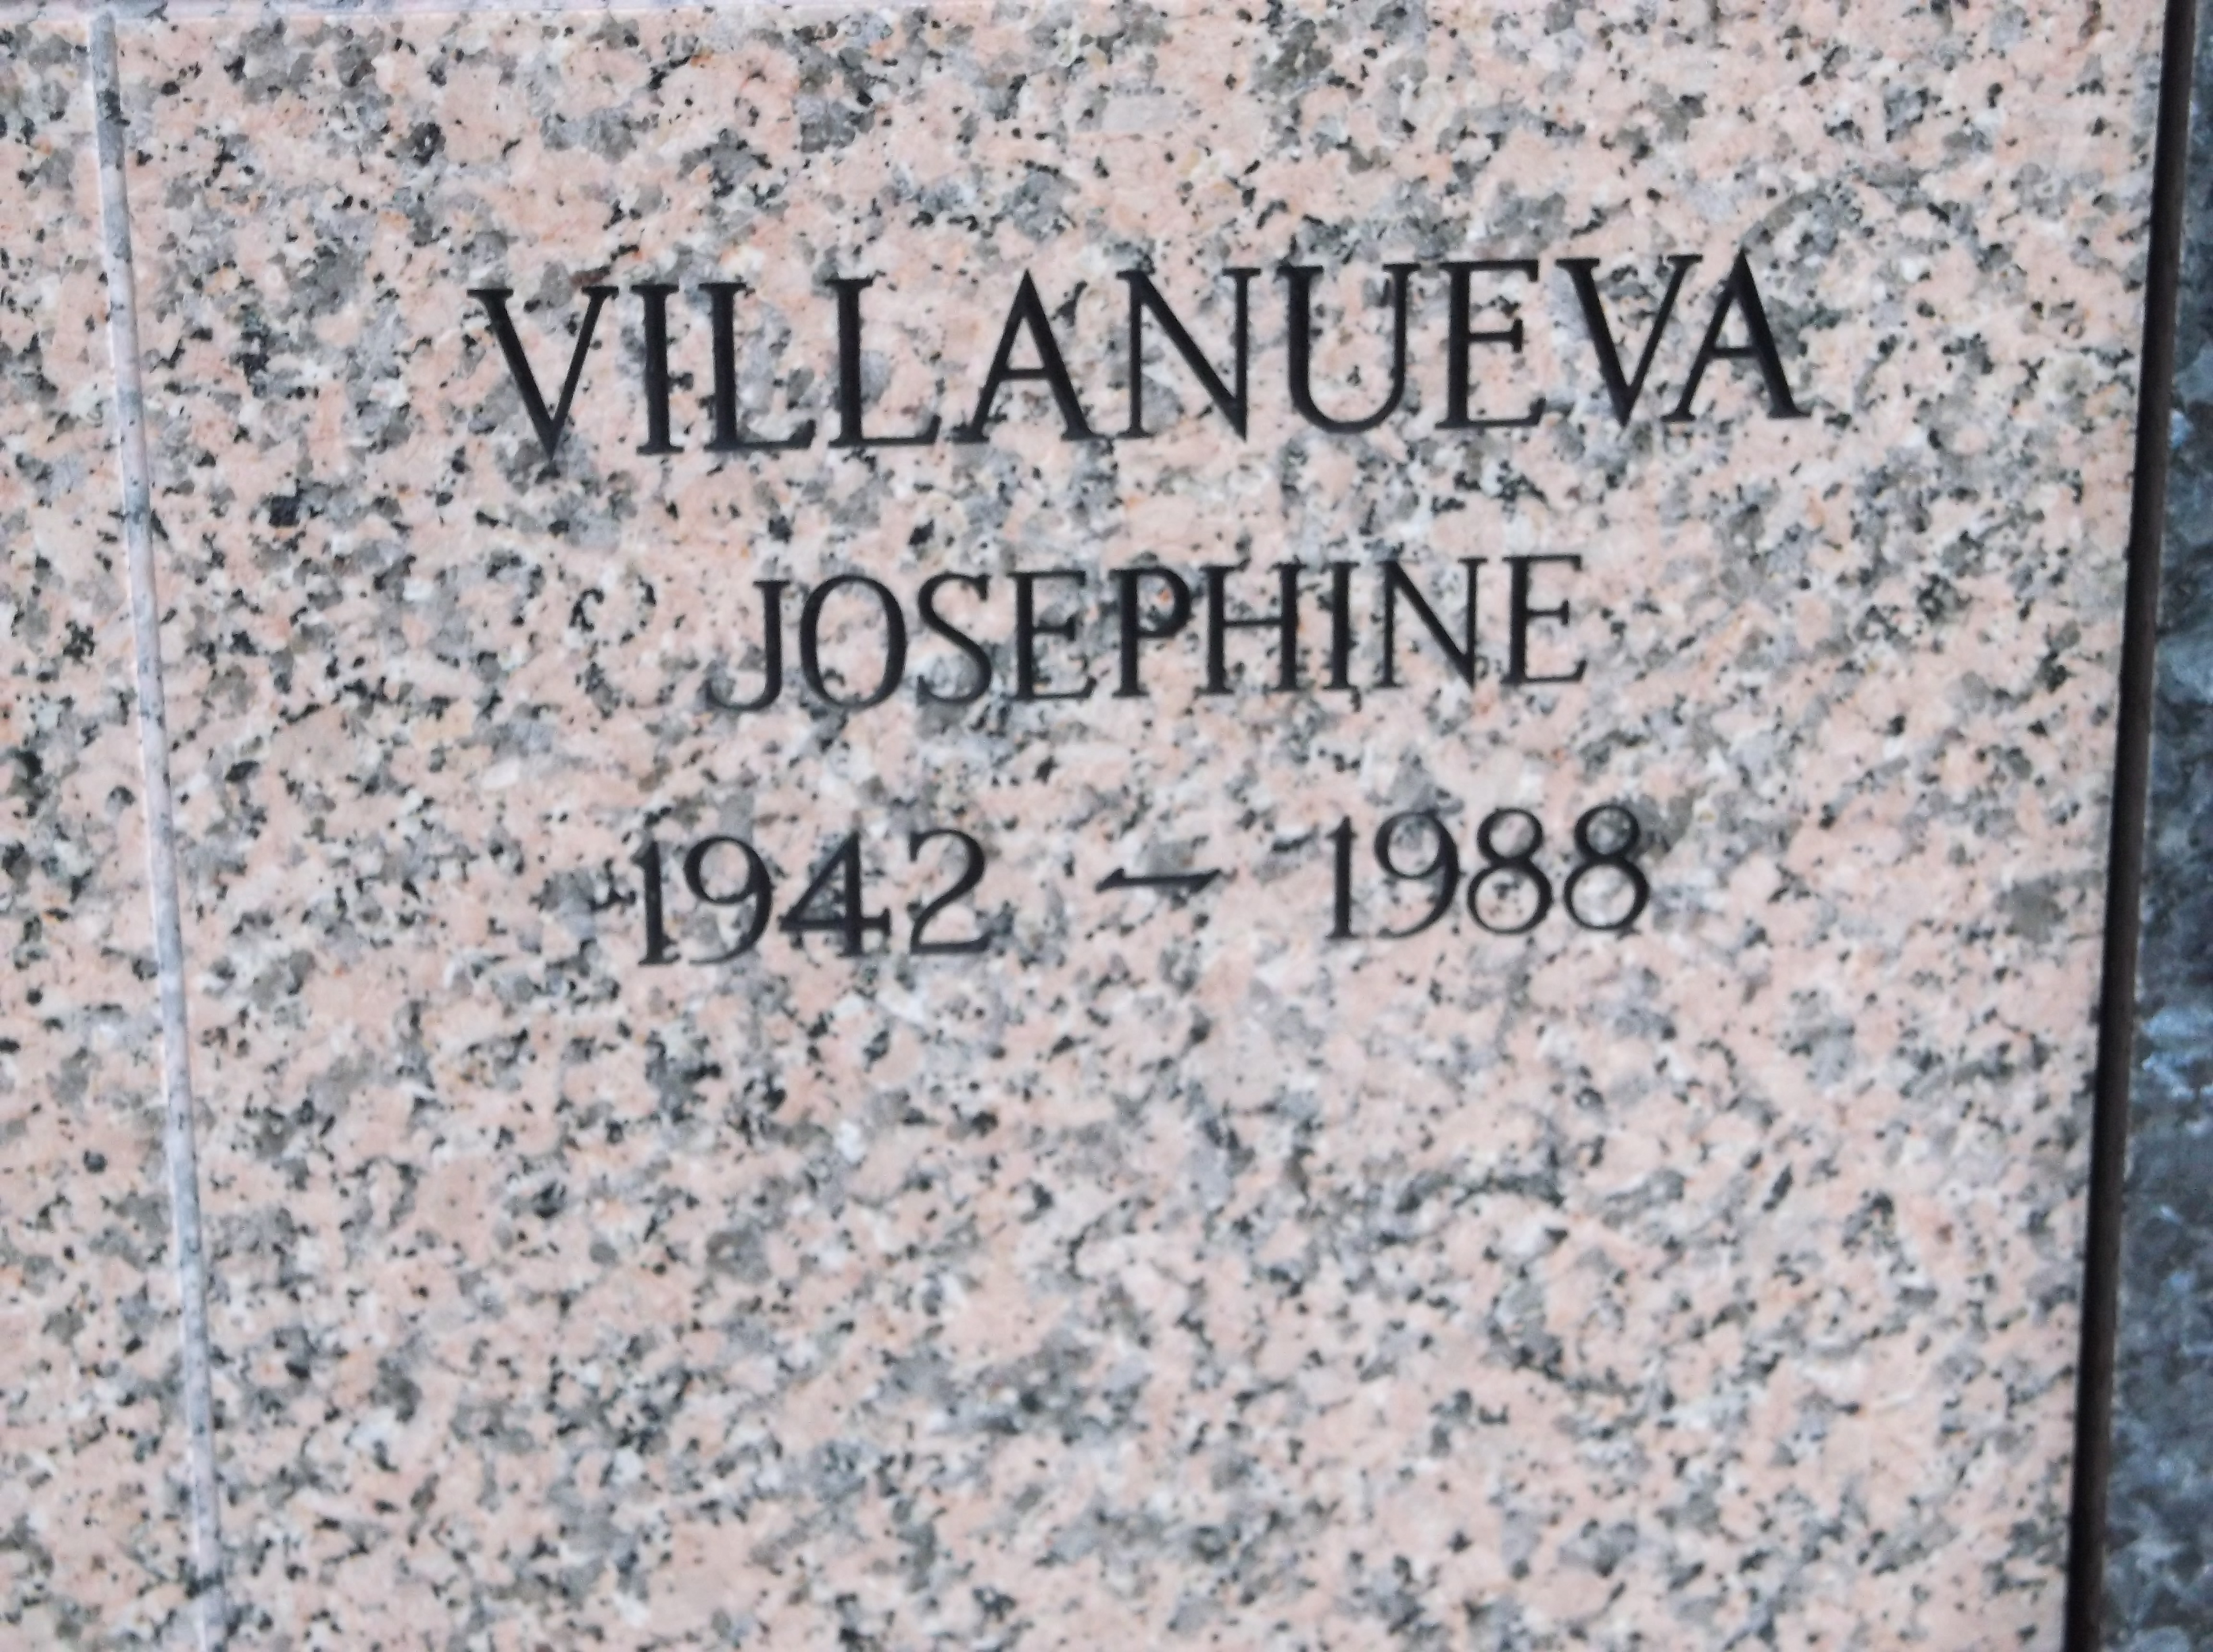 Josephine Villanueva